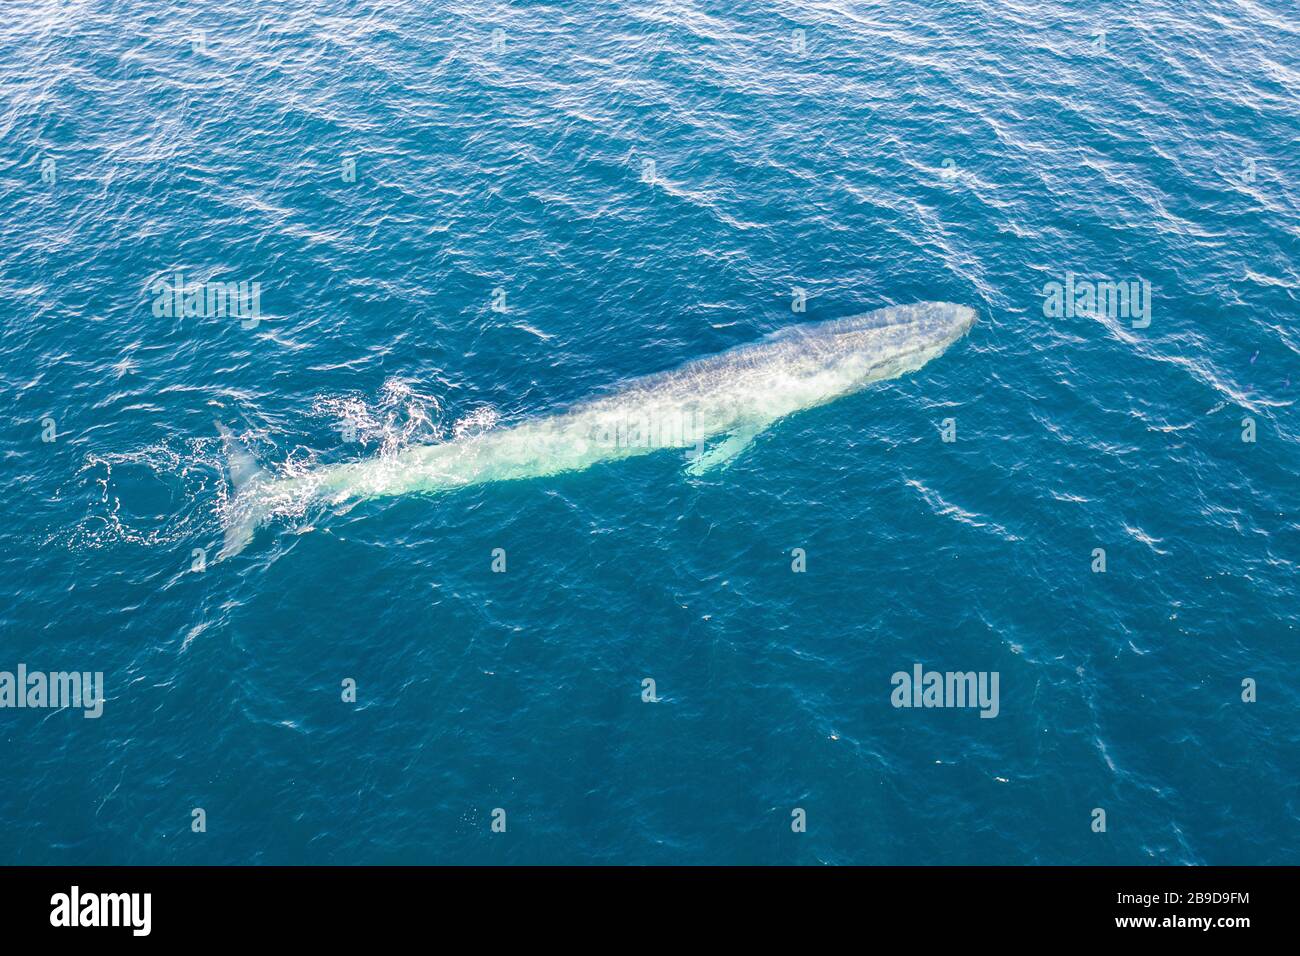 Une baleine bleue pygmée, Balaenoptera musculus brevicauda, s'élève à la surface. Banque D'Images